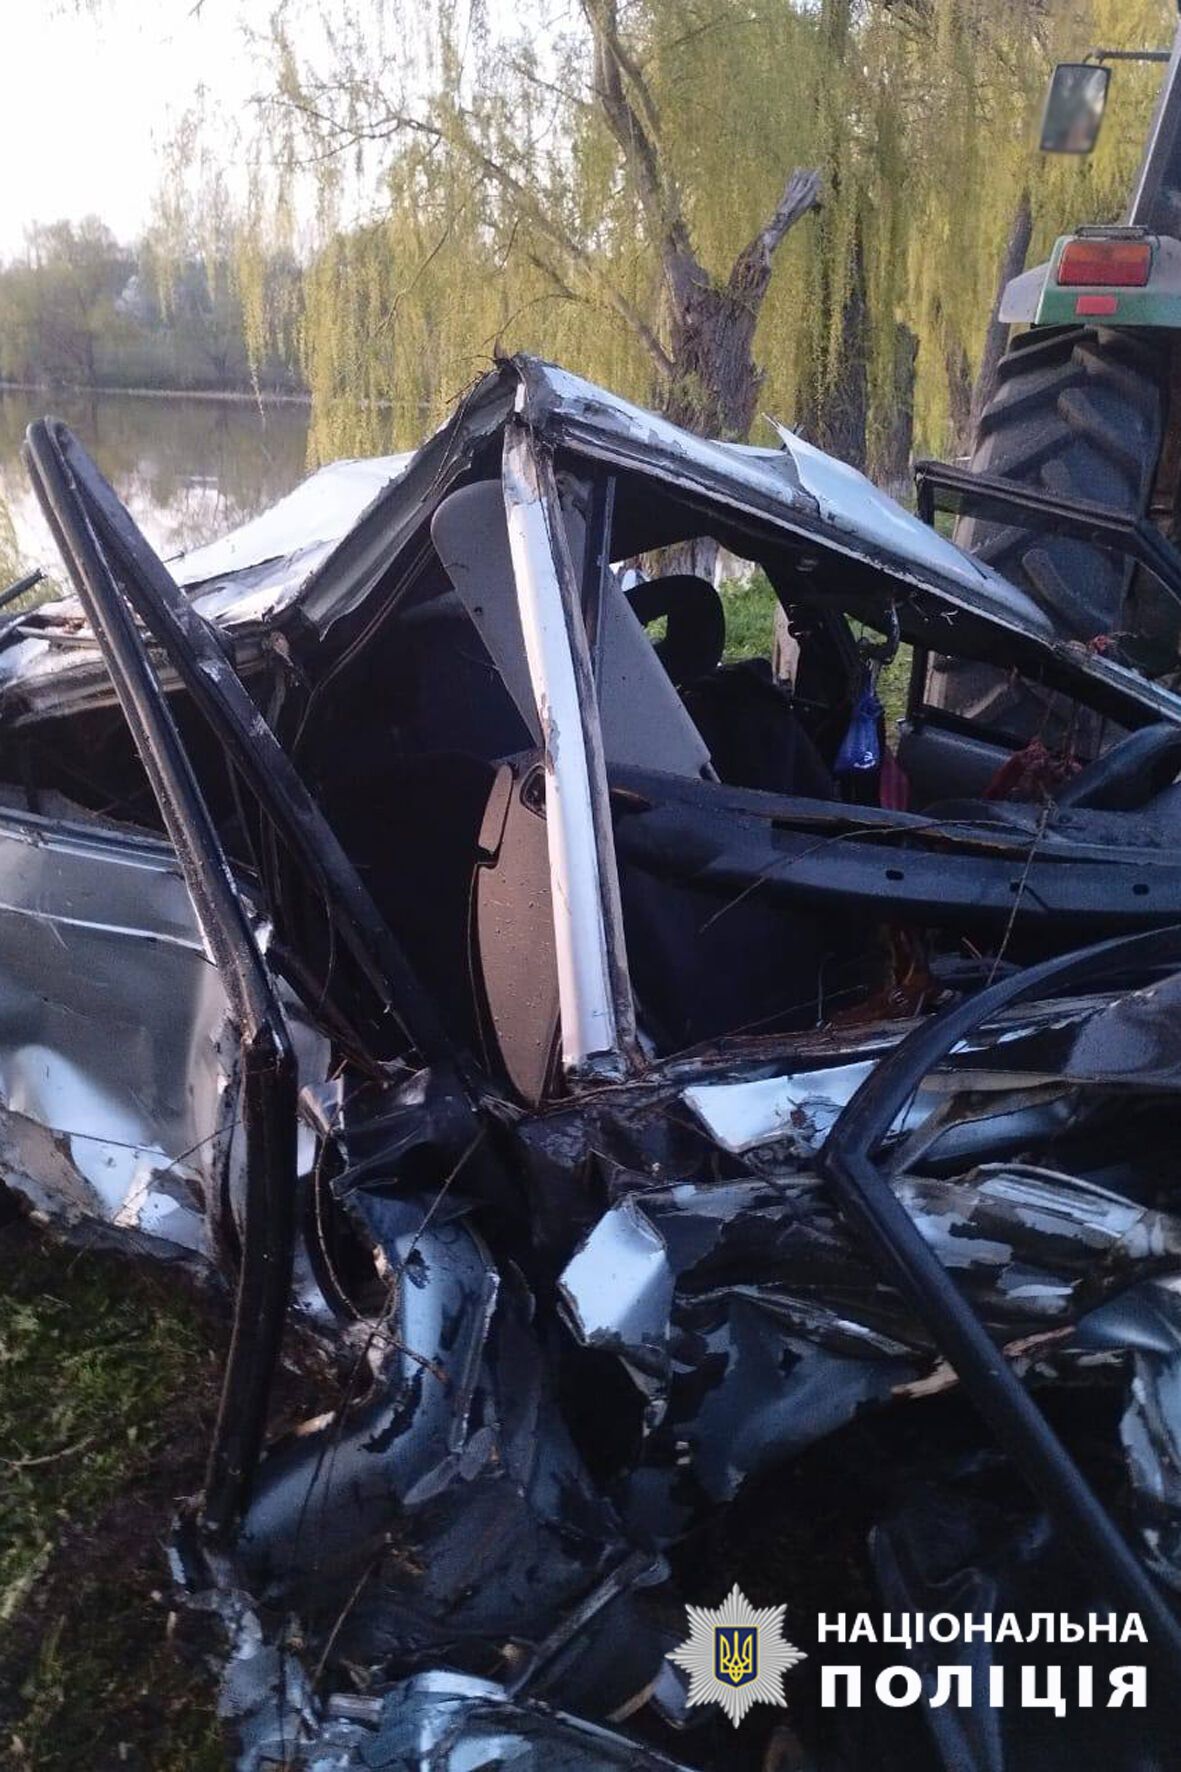 На Черкасчине 26-летний водитель не справился с управлением и слетел в водоем: он умер в больнице. Фото